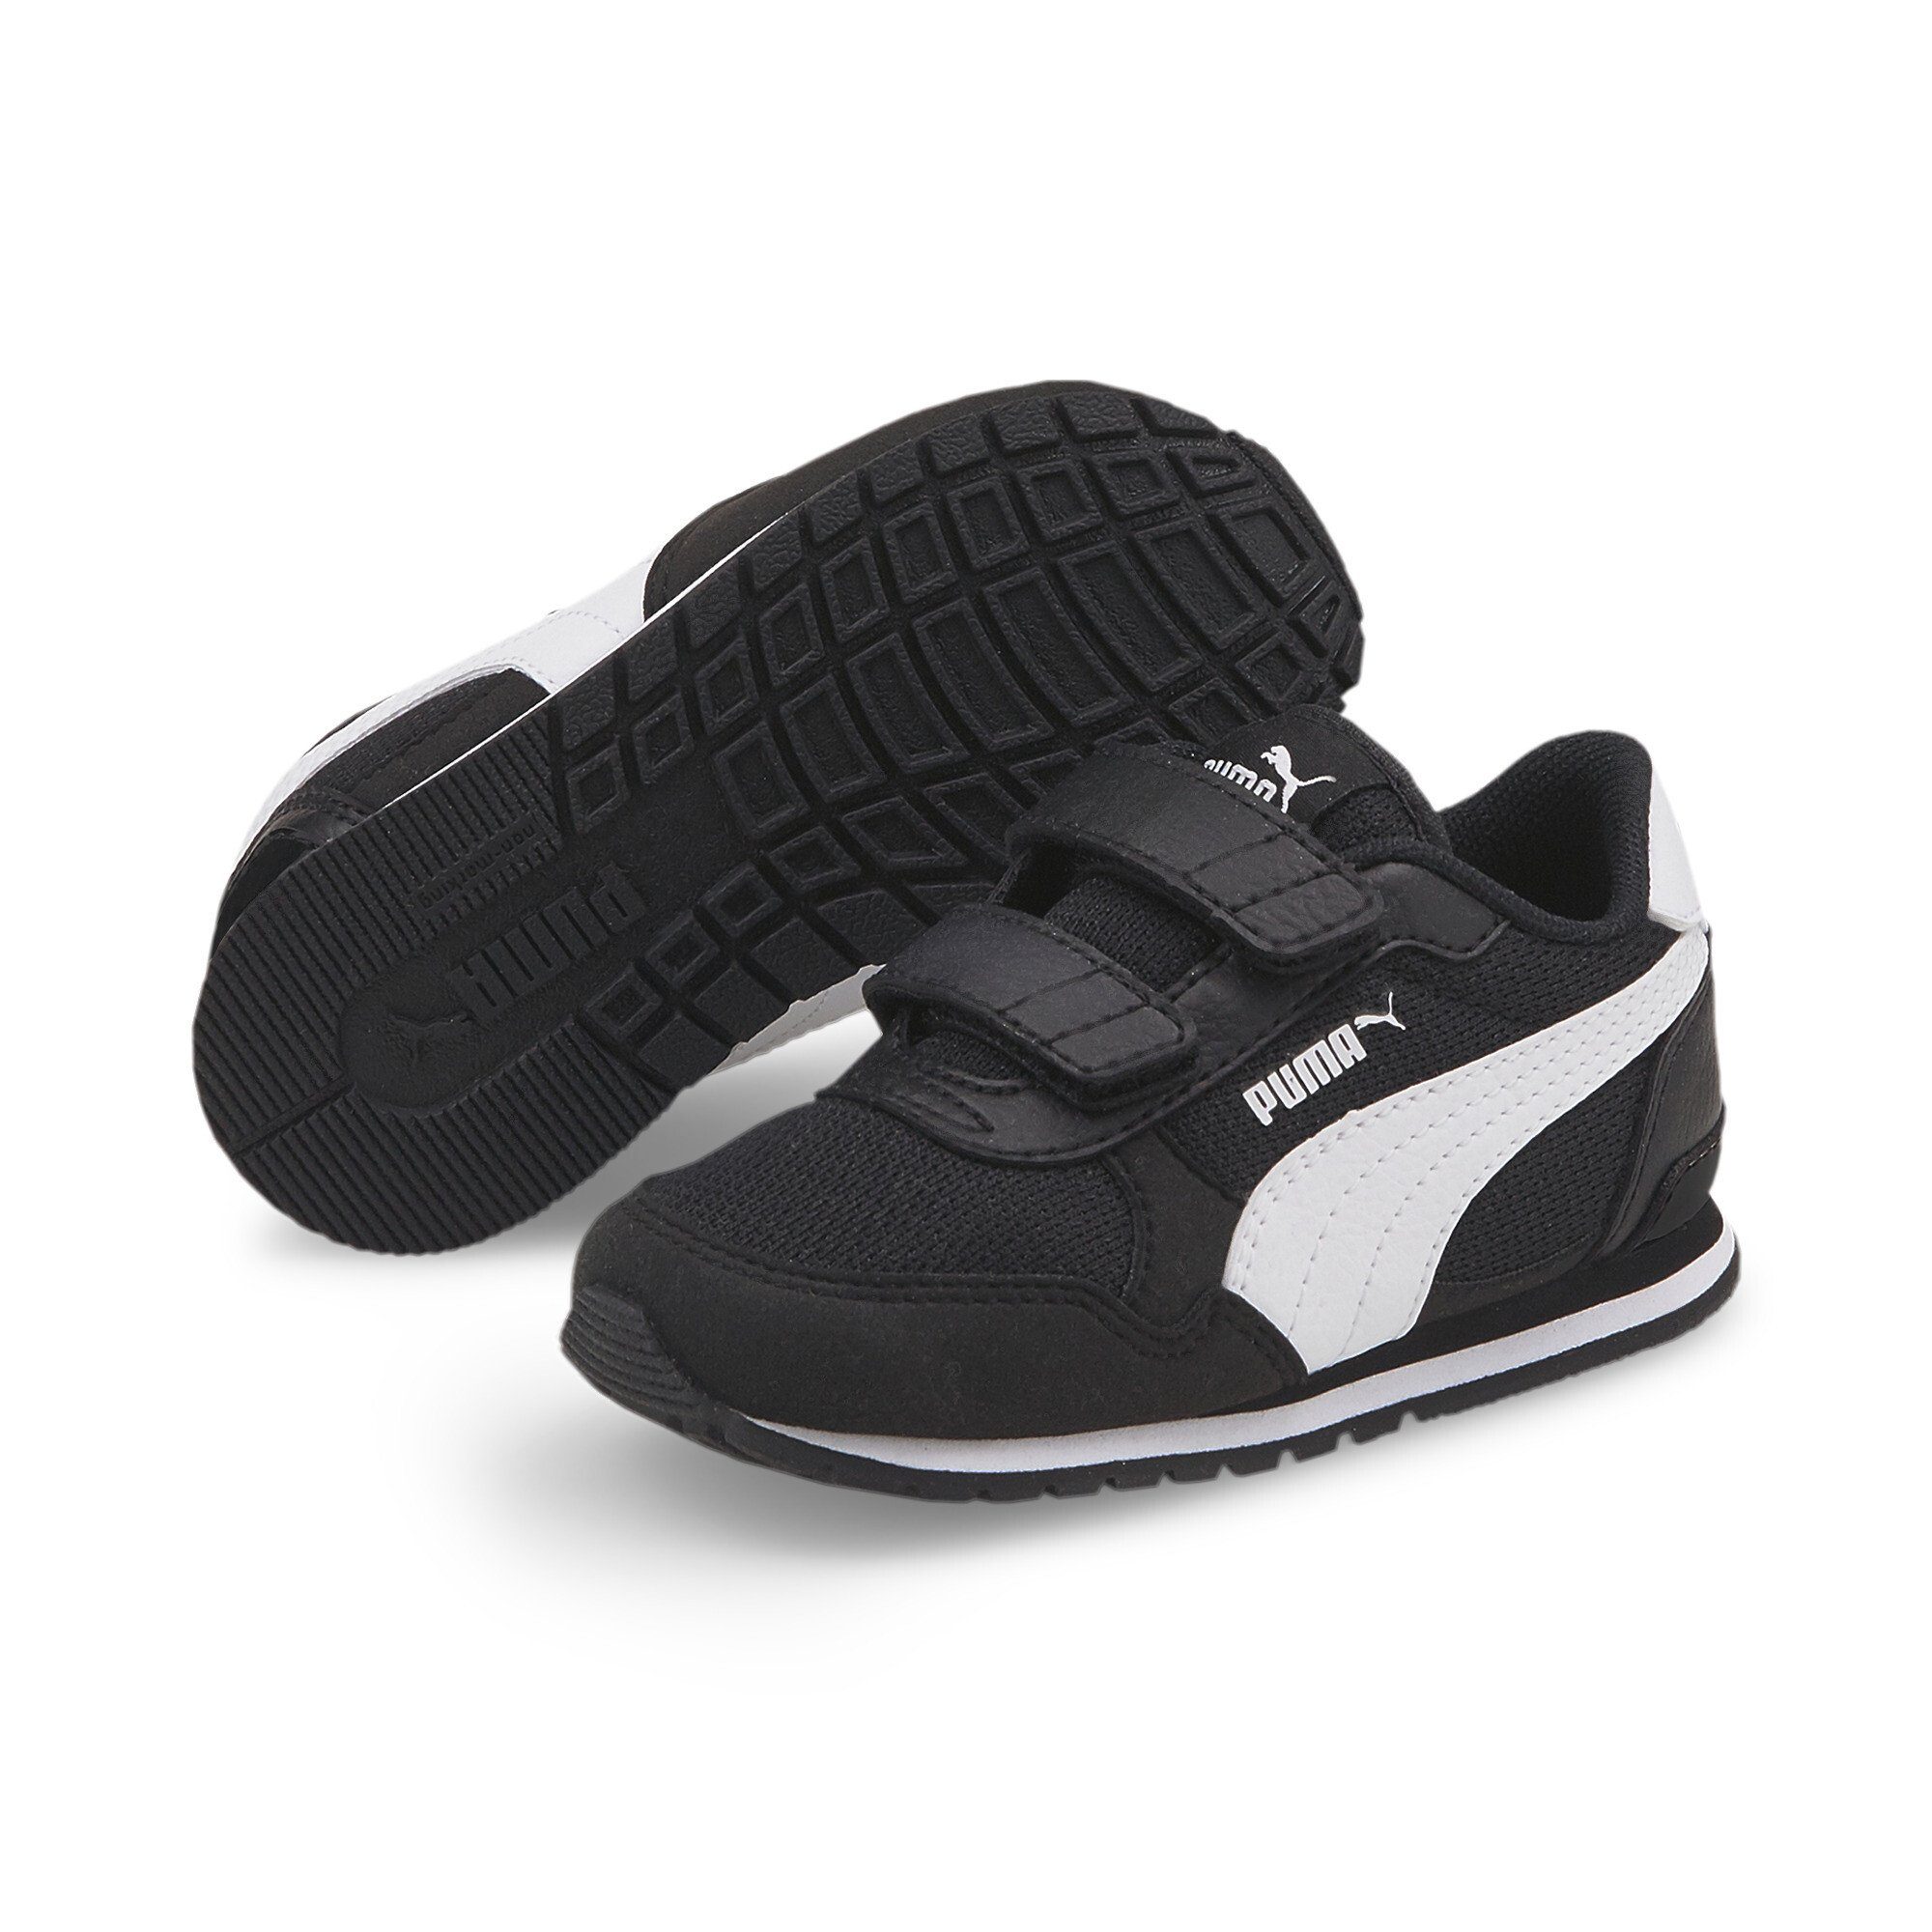 Runner PUMA v3 Sneaker Kinder Sneakers Mesh White Black ST V